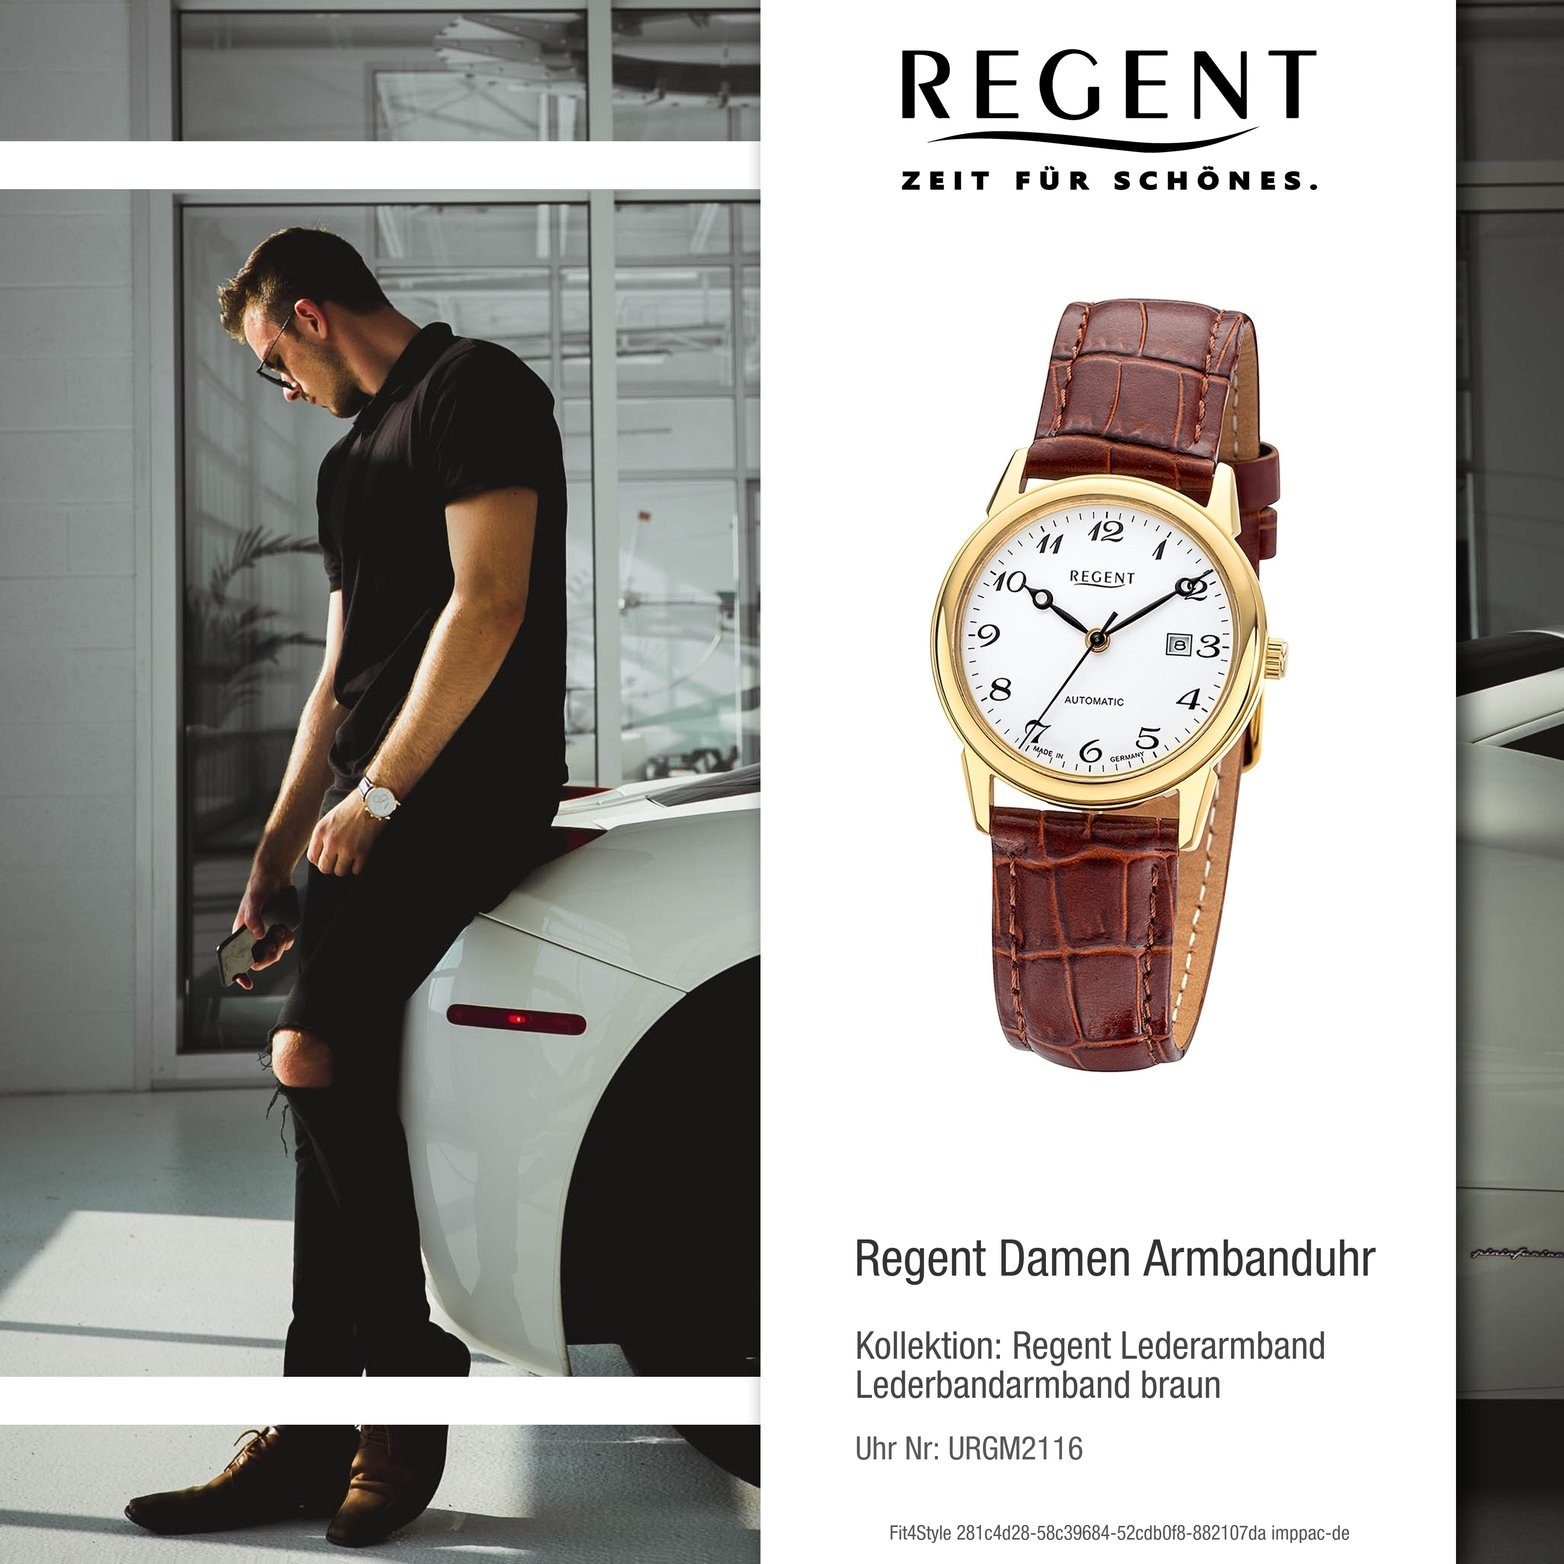 Regent (ca. Analog, braun, mittel 32mm) Damenuhr Damen Gehäuse, Quarzuhr Lederbandarmband rundes Regent Armbanduhr